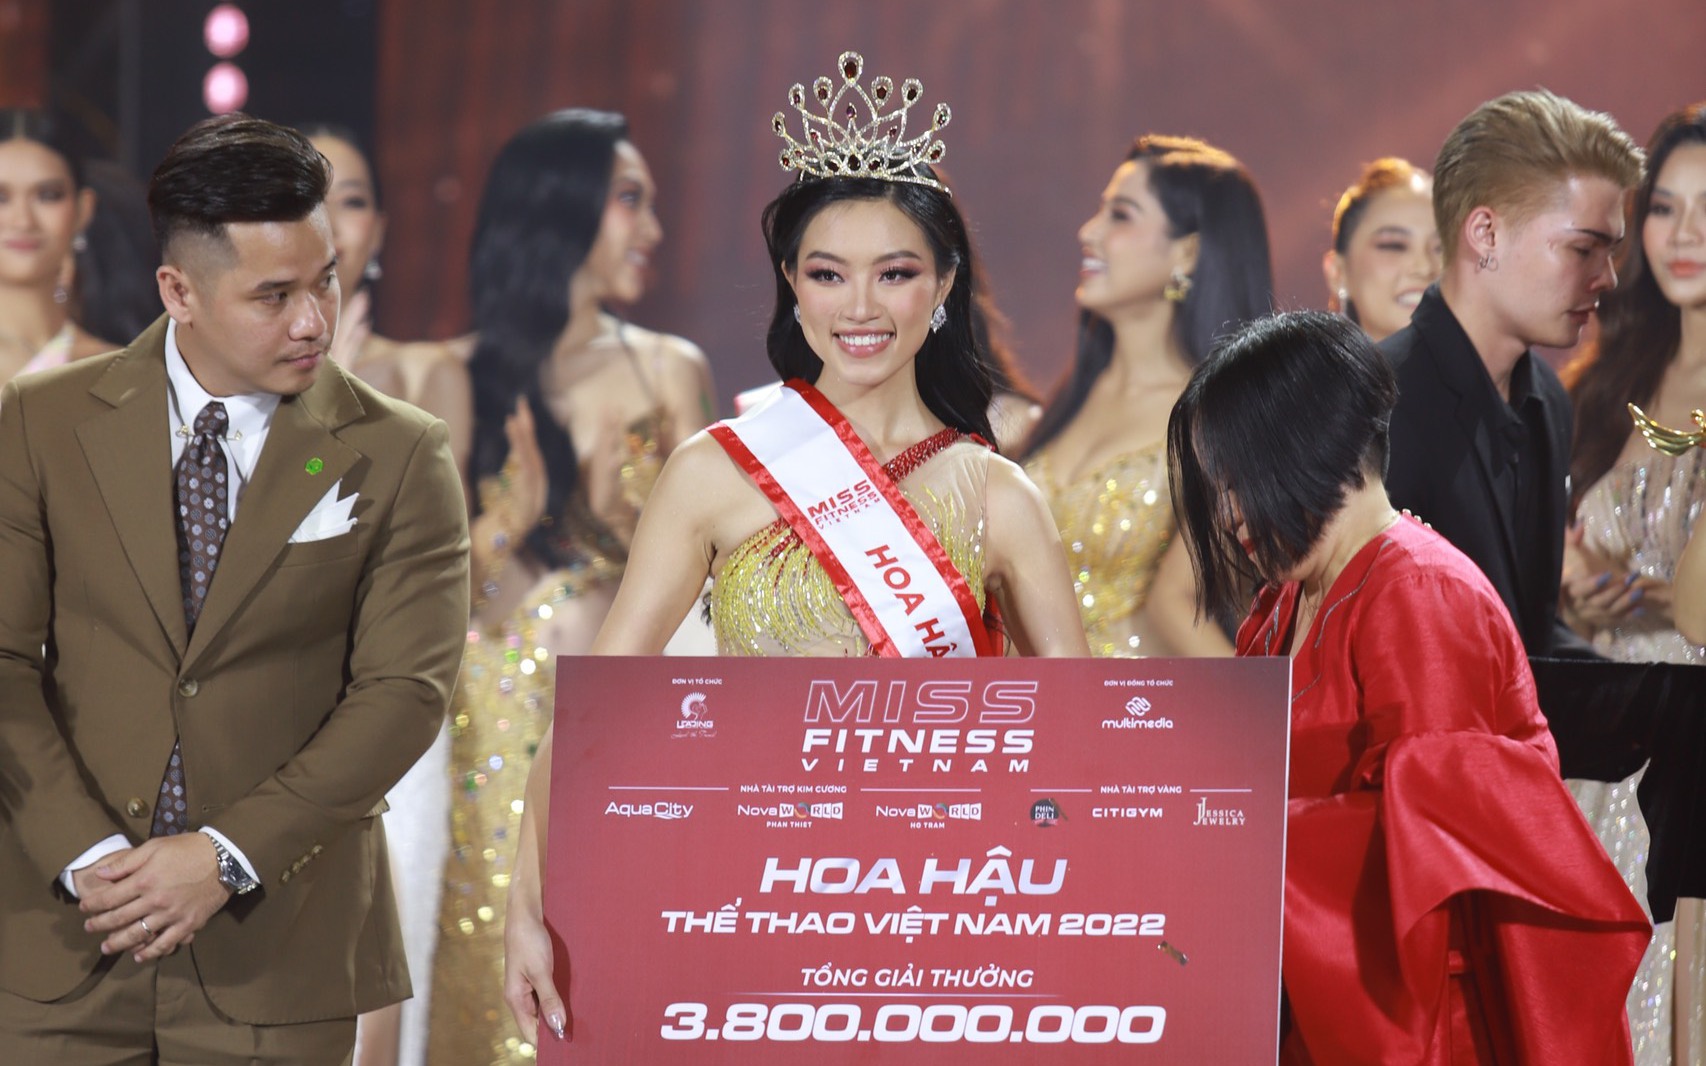 Chung kết Hoa hậu Thể thao Việt Nam 2022: Tân Miss Fitness Vietnam 2022 chính thức gọi tên Đoàn Thu Thủy